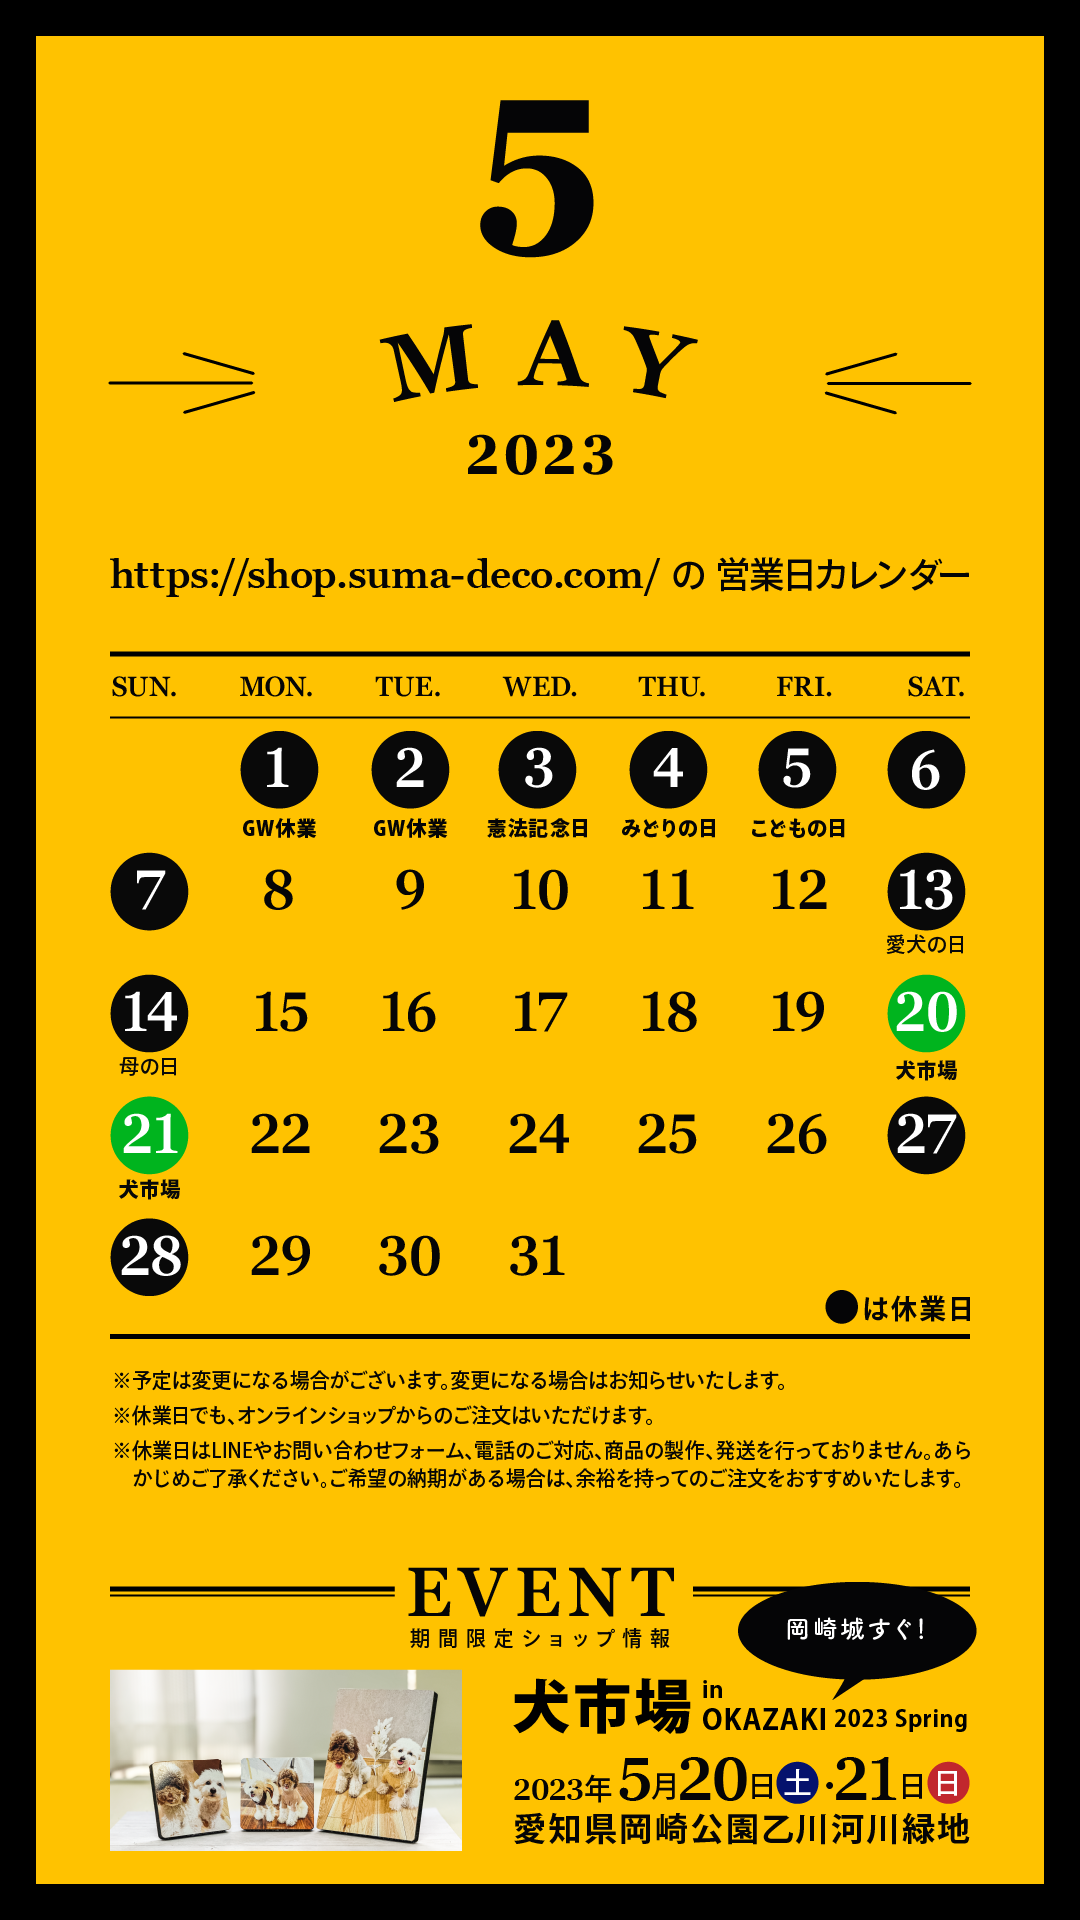 【5/20(土)・5/21(日)】犬市場 in OKAZAKI 2023 Spring出店のお知らせ